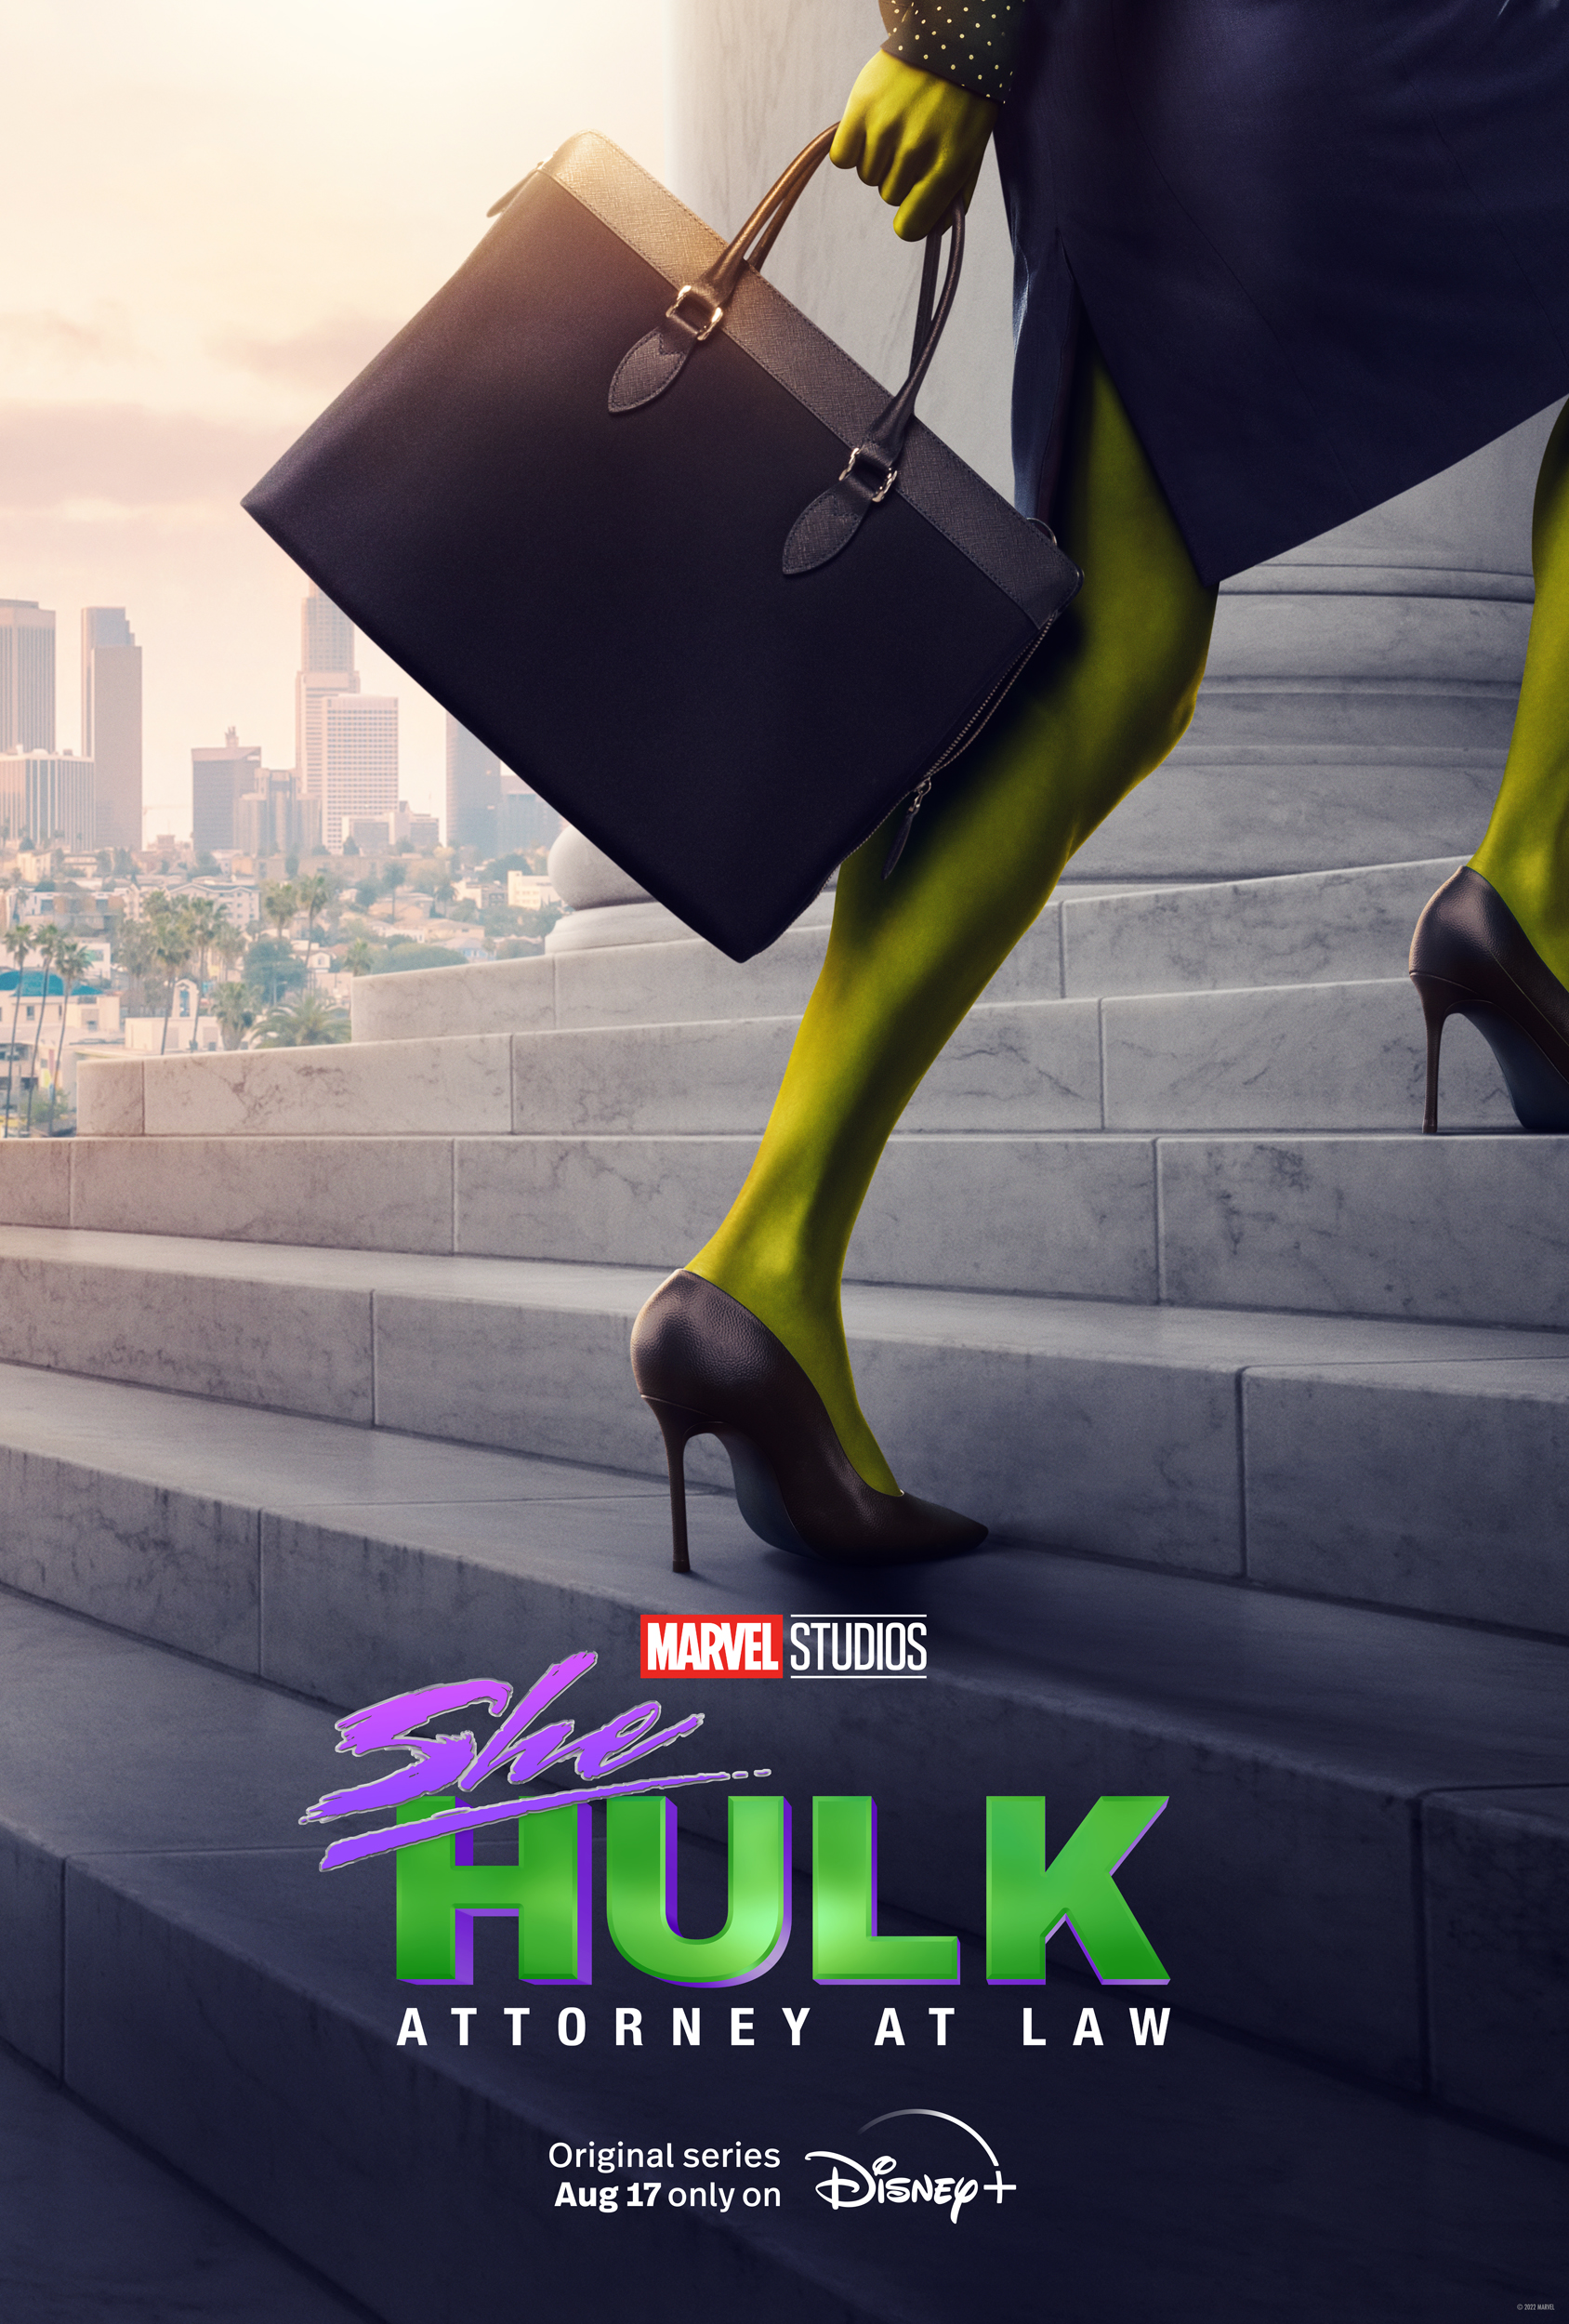 Tatiana Maslany stars in Marvel Studios' "She-Hulk: Attorney At Law" by Disney+